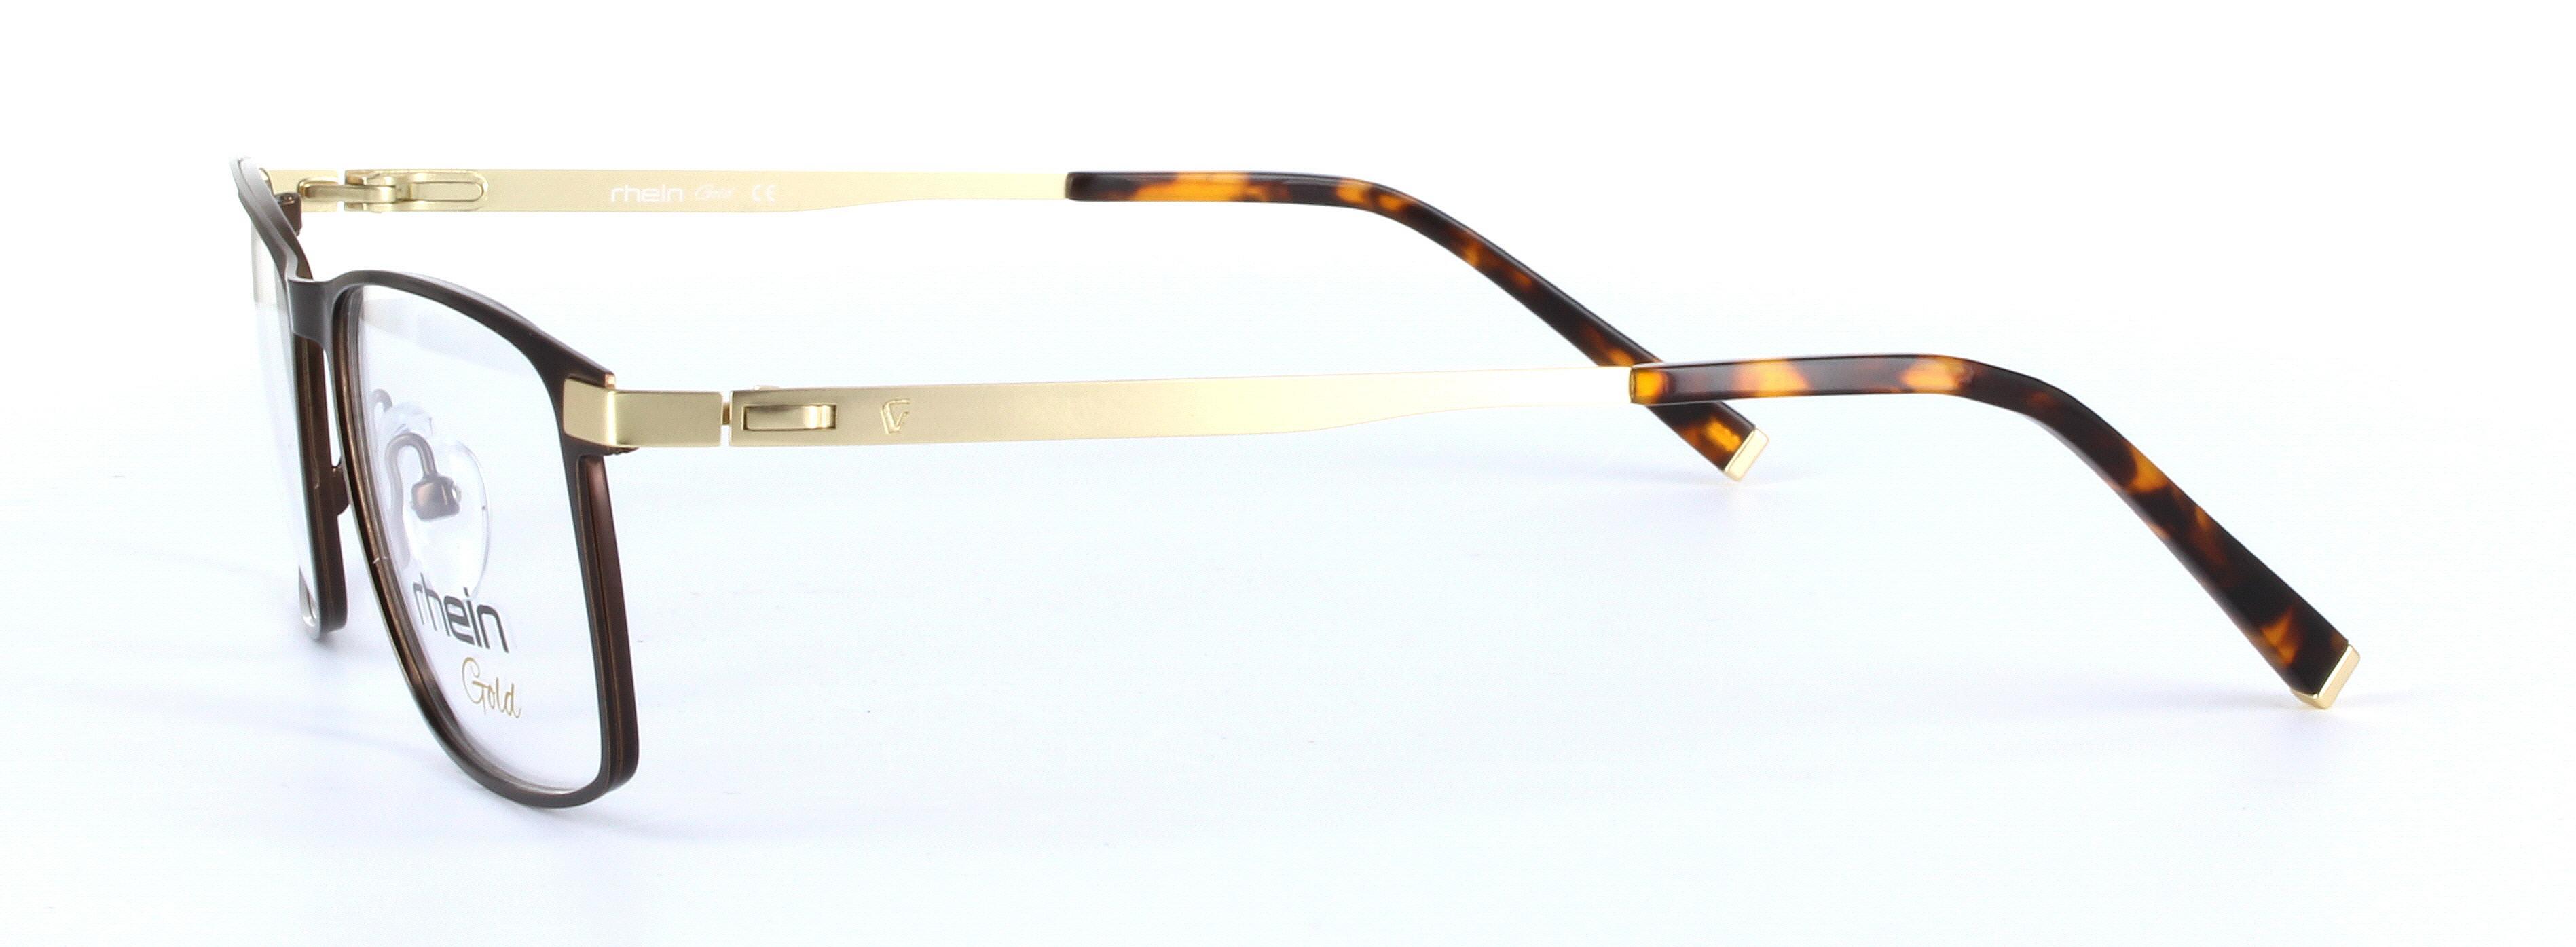 Adam Brown Oval Rectangular Metal Glasses - Image View 2